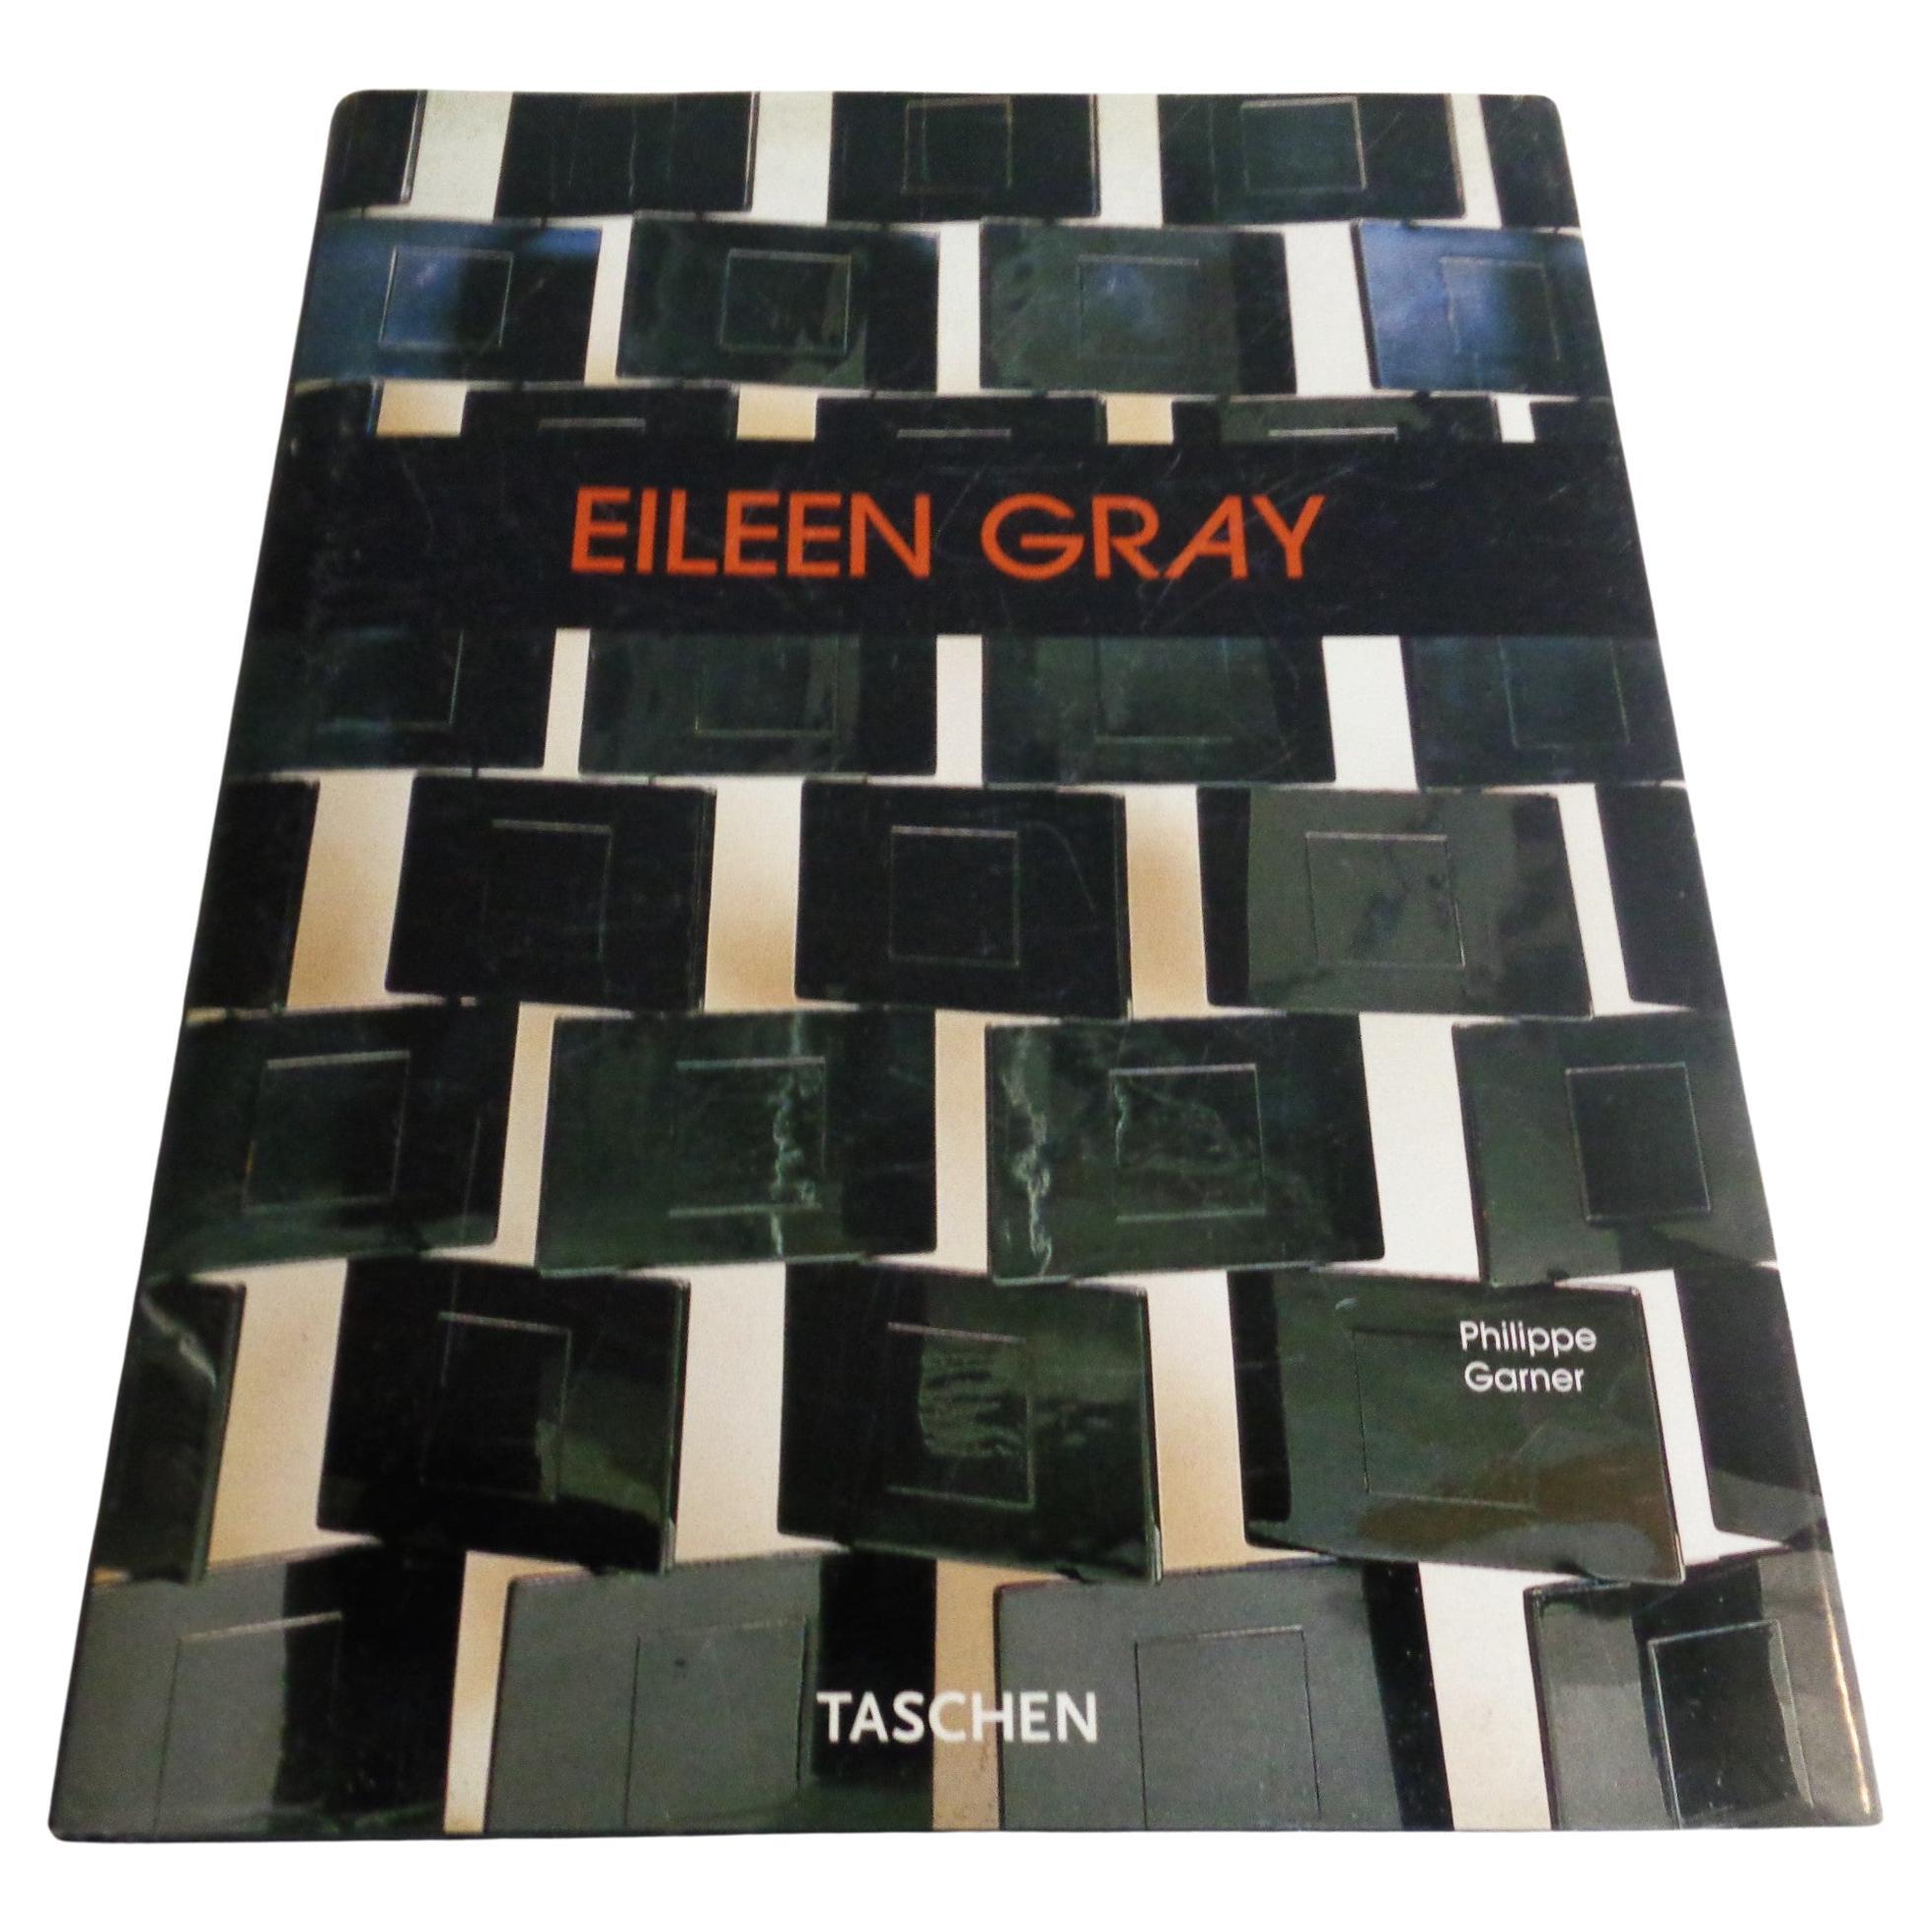 Eileen Gray - Design and Architecture - Garner, Philippe - 2006 Taschen 14